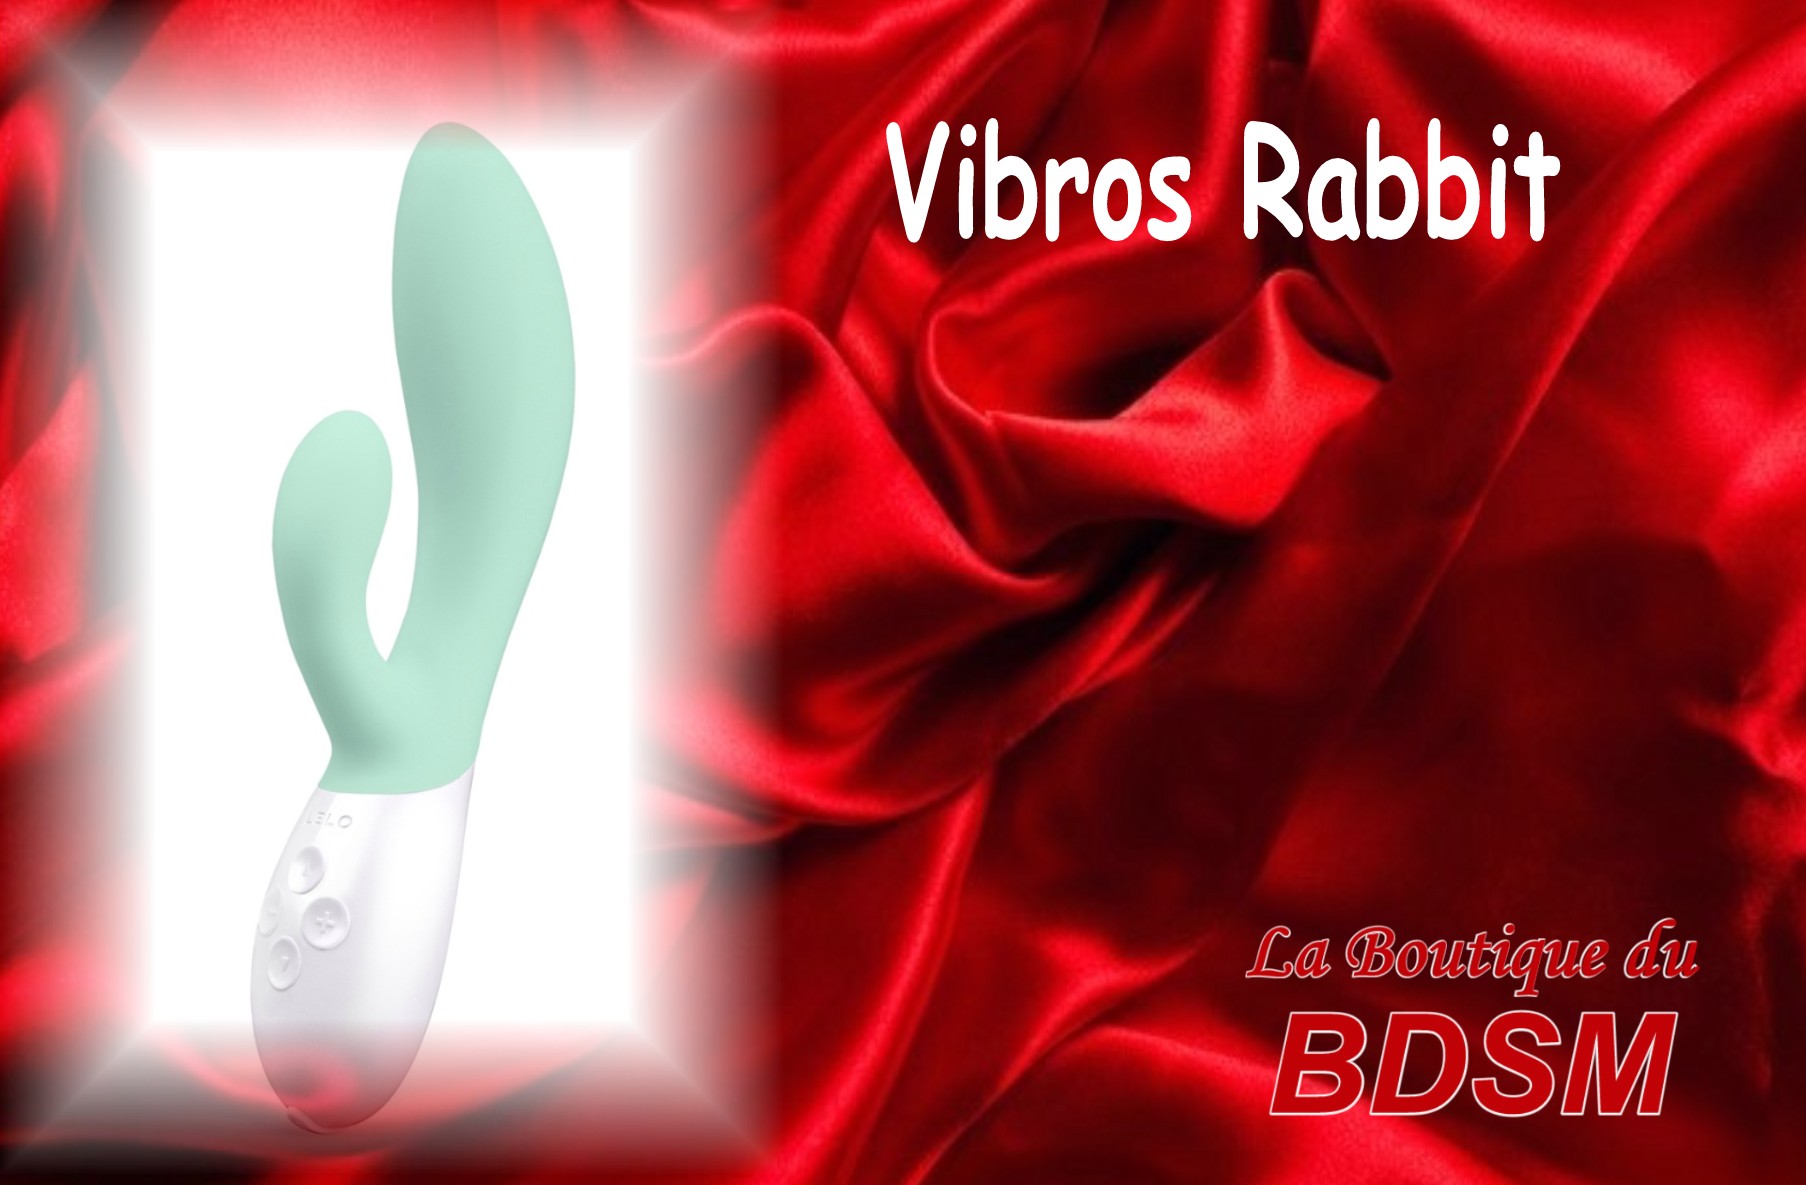 VIBROS RABBIT MOUTON 16